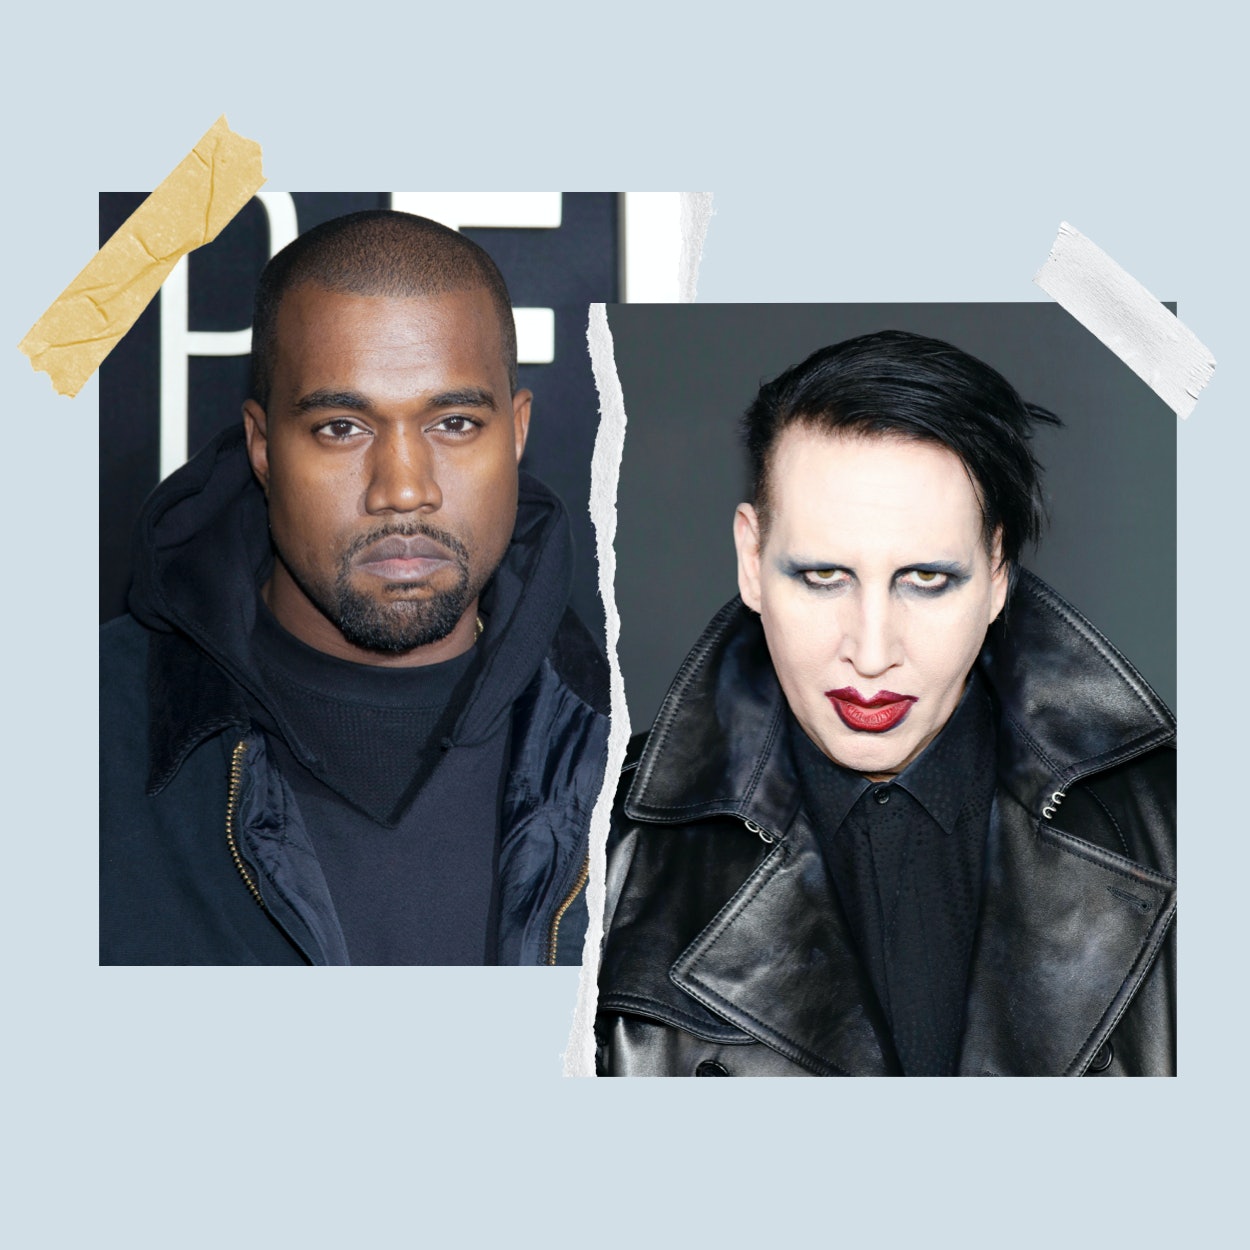 Η Κυριακάτικη Συναυλία του Kanye West περιελάμβανε έναν κύκλο προσευχής με τον Marilyn Manson